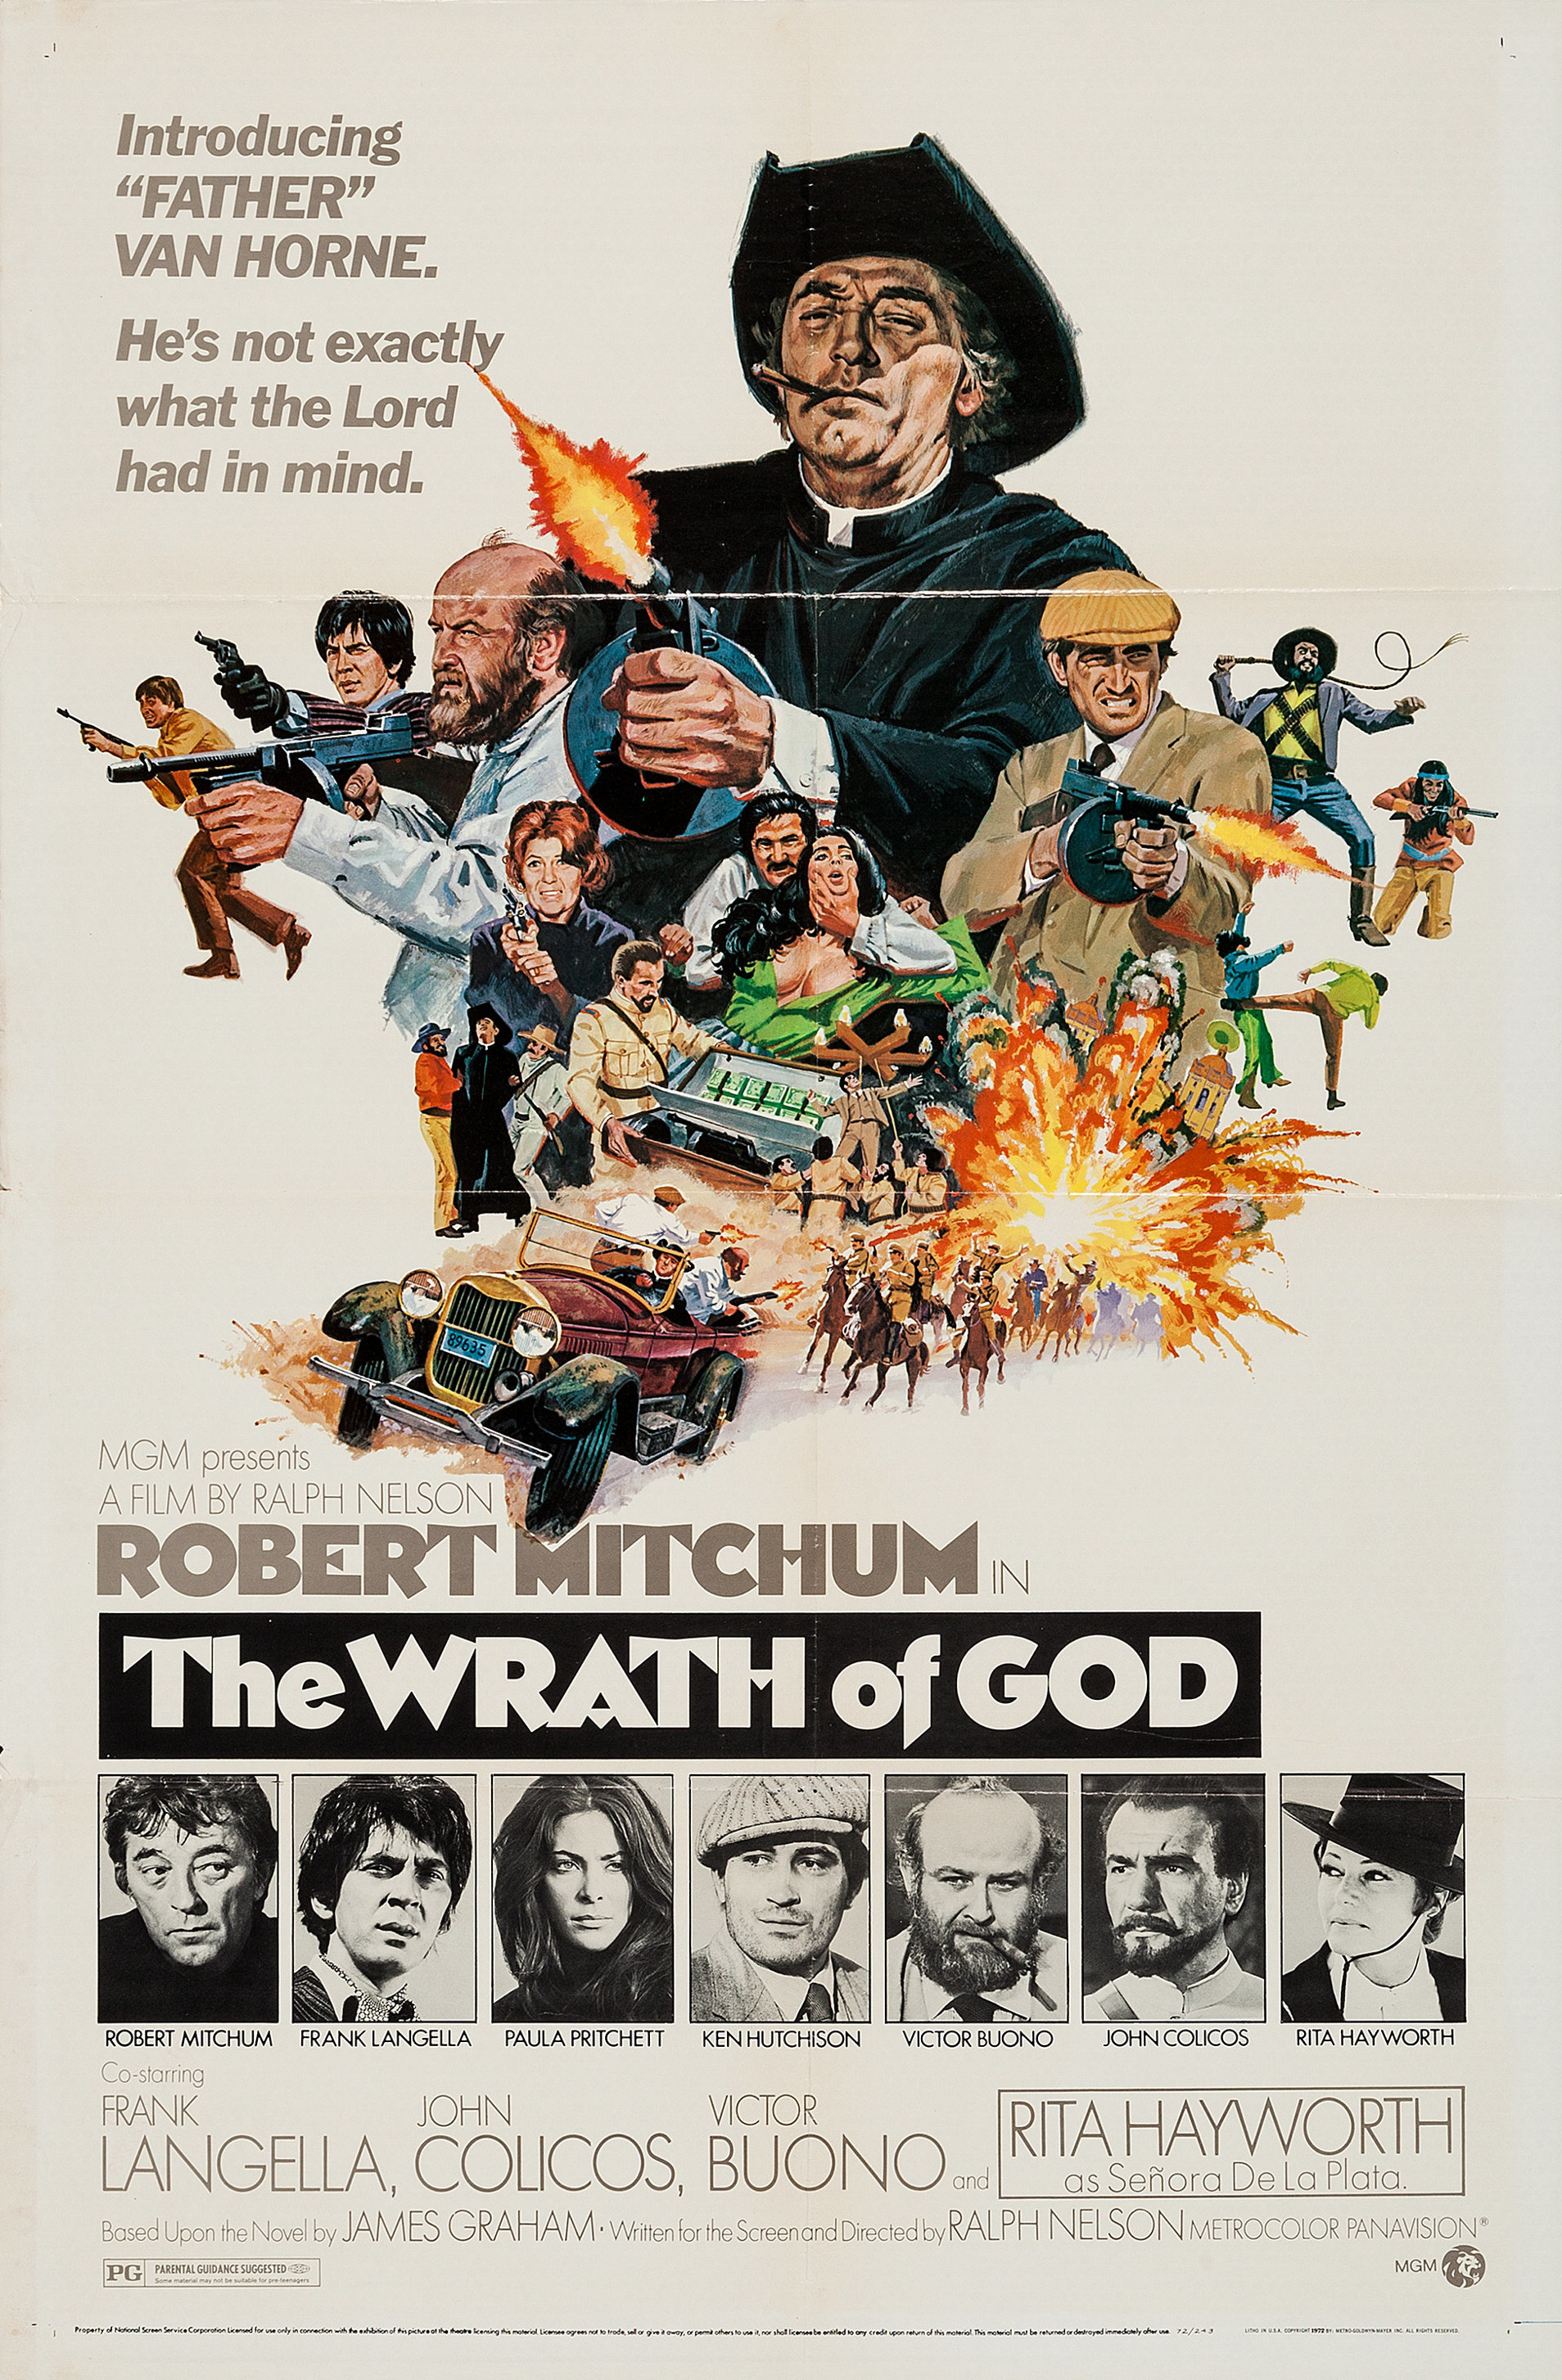 Wrath of God (#2 of 2): Mega Sized Movie Poster Image - IMP Awards